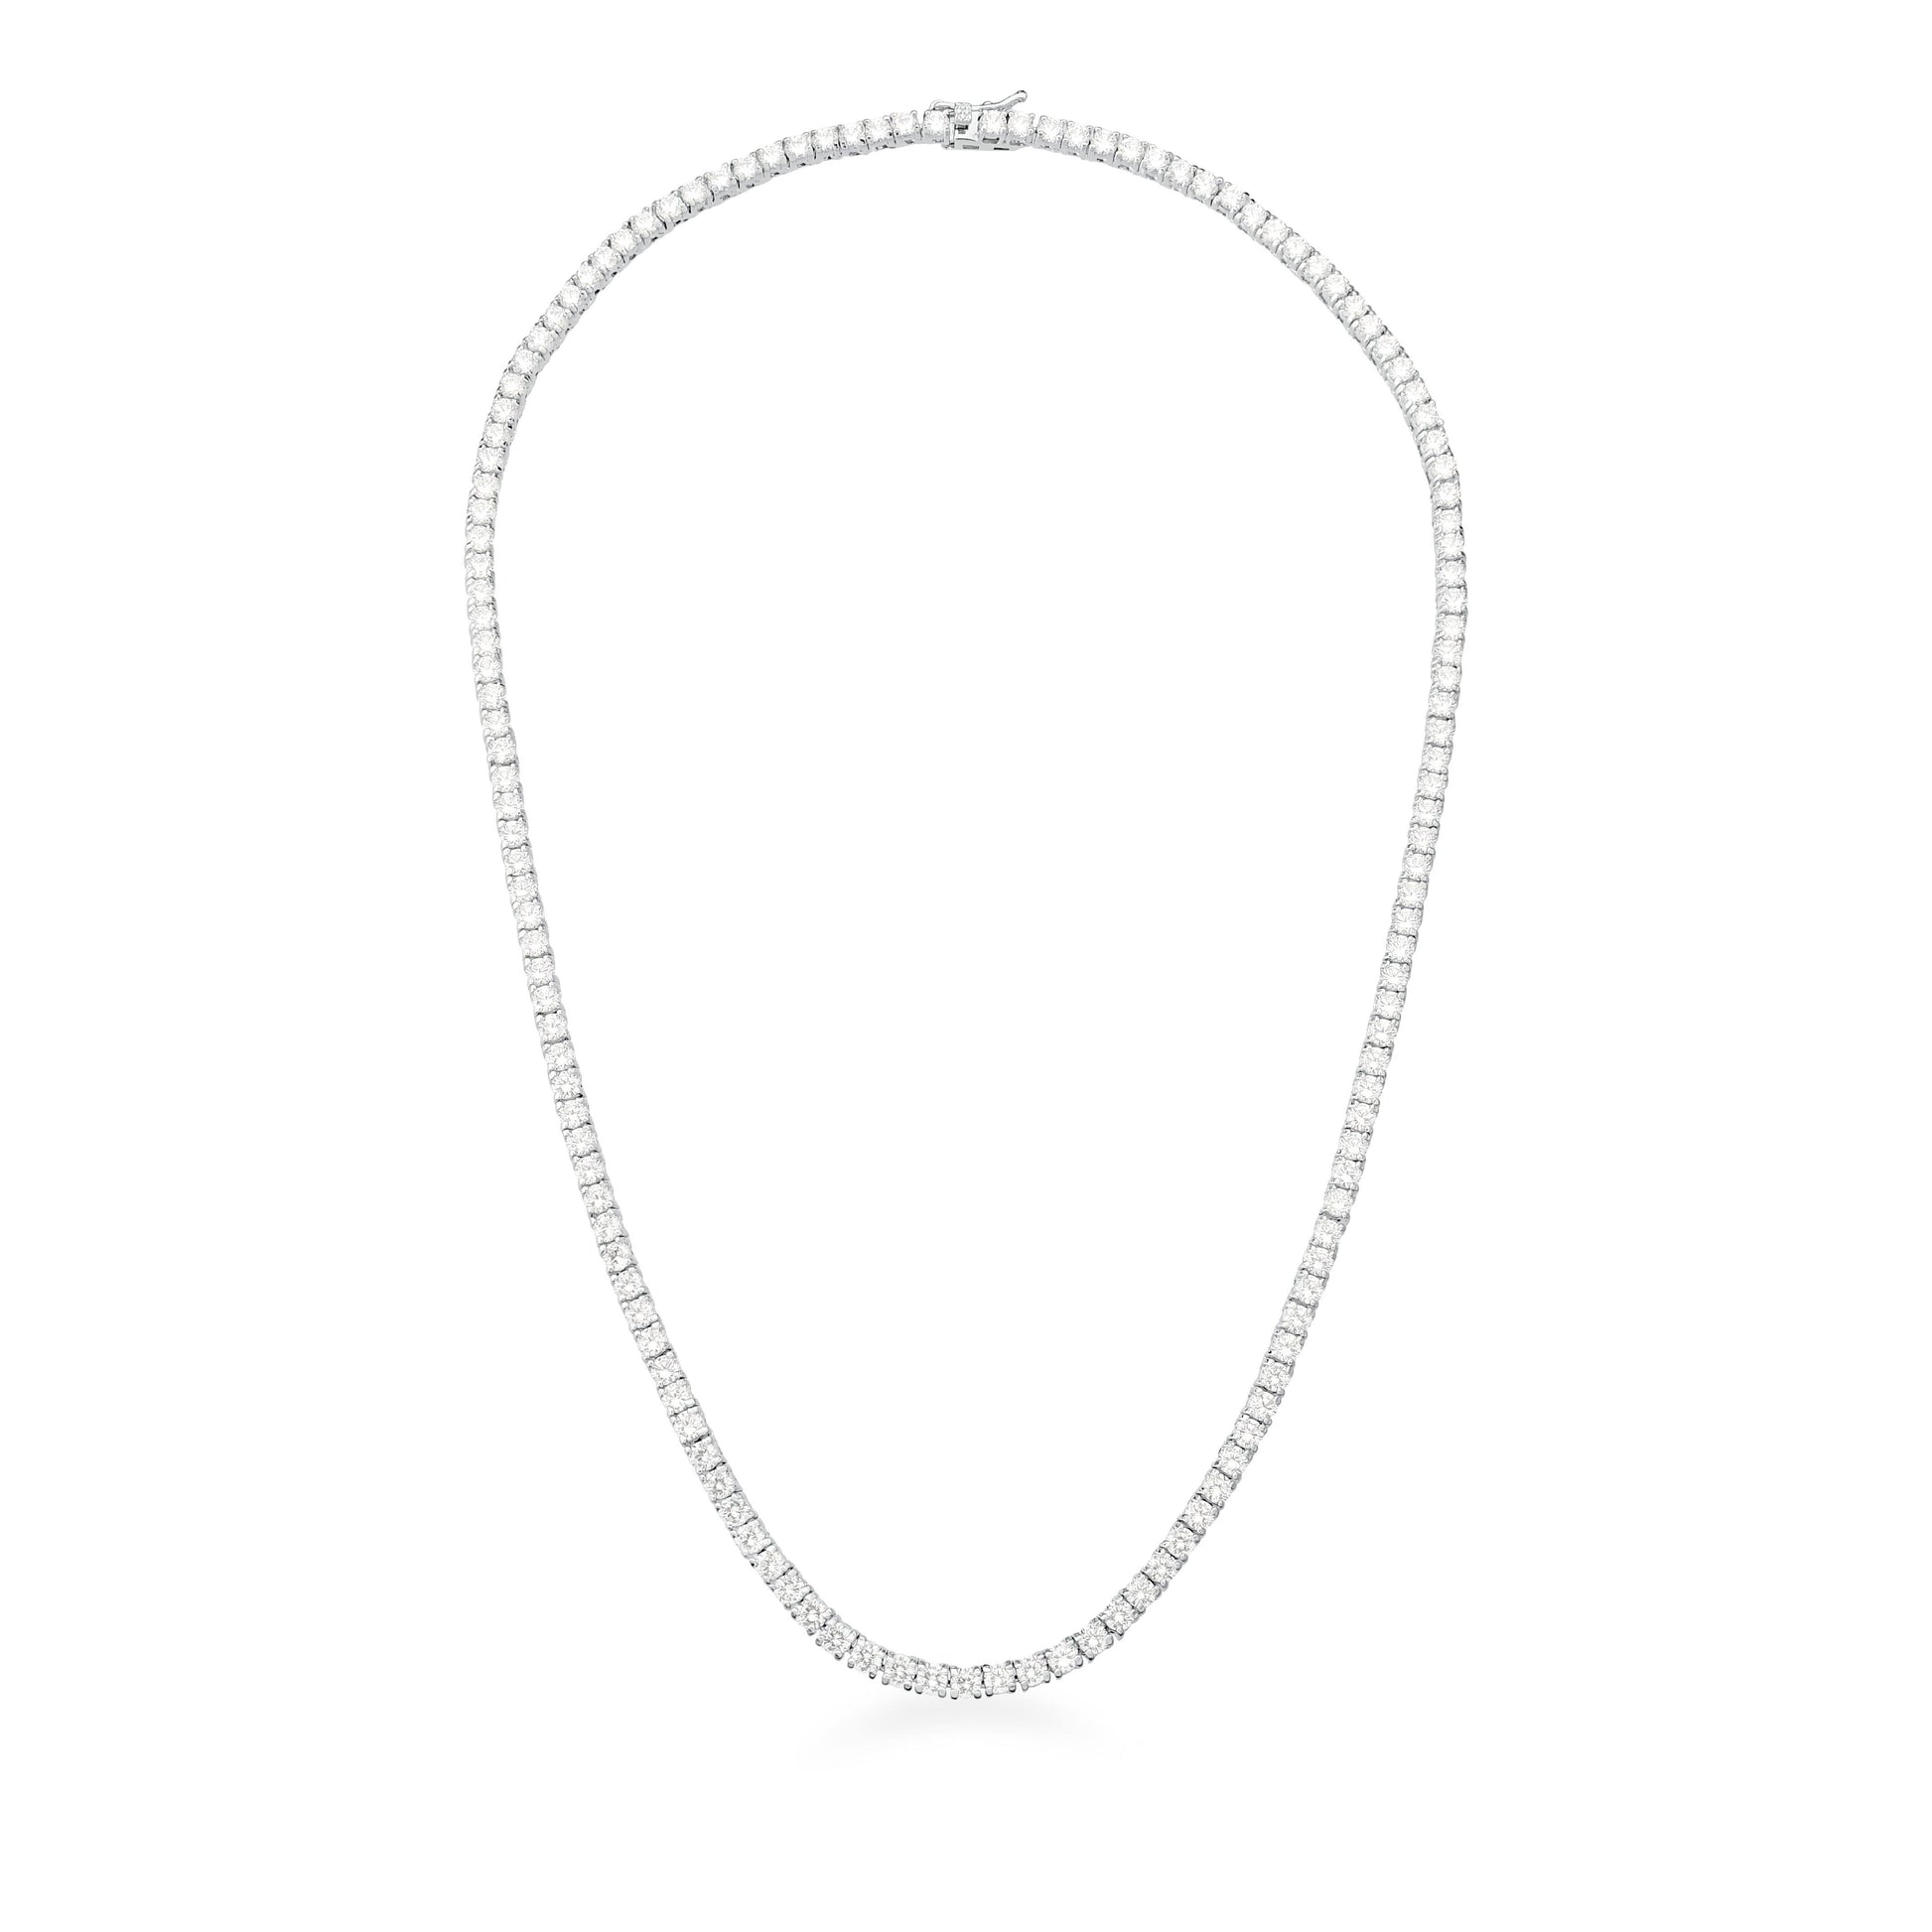 Corrente Riviera com Zircônias Brancas 60 cm - Citrine Concept Jewelry